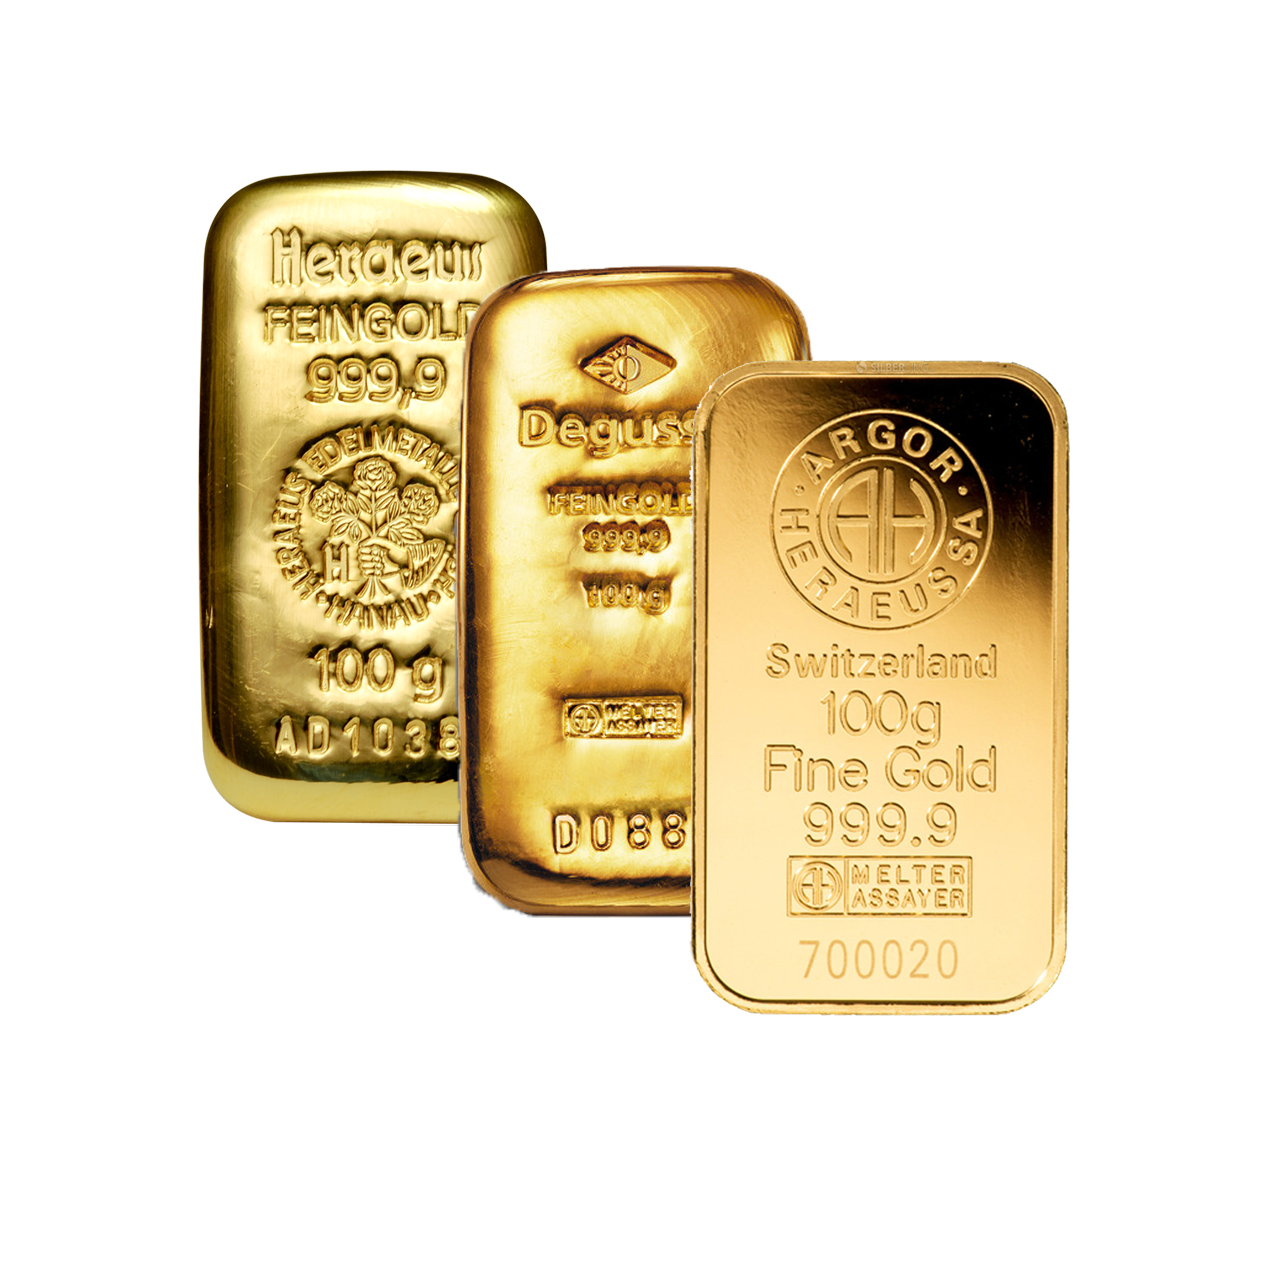 Gold Bar - 100 g fine gold .9999 - various brands